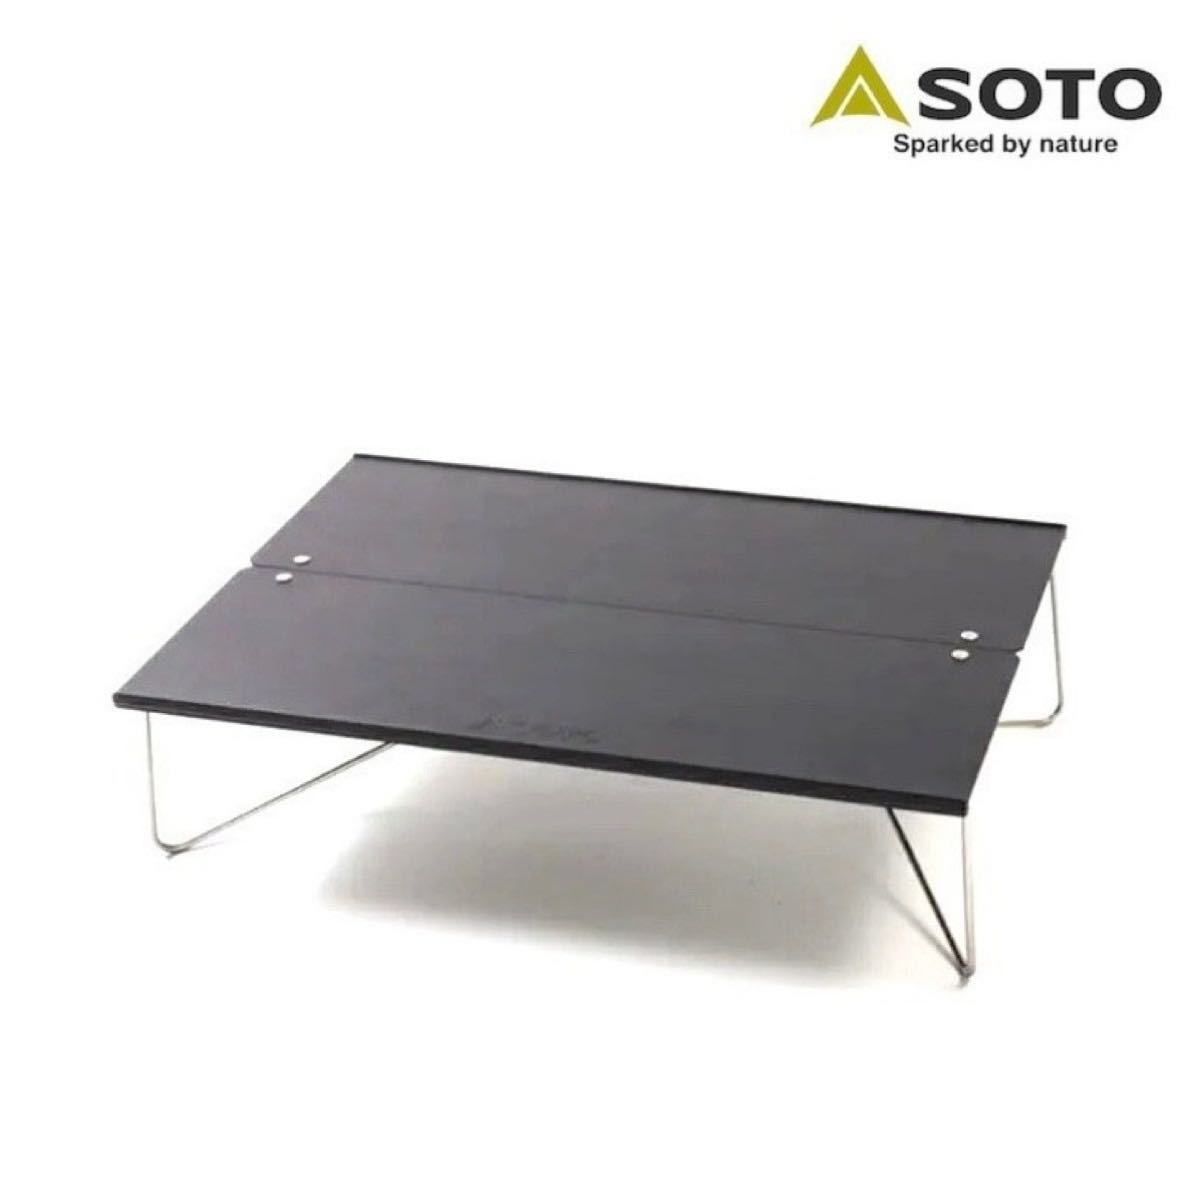 SOTO ソト フィールドホッパー マットブラック ST-630MBK コンパクトテーブル